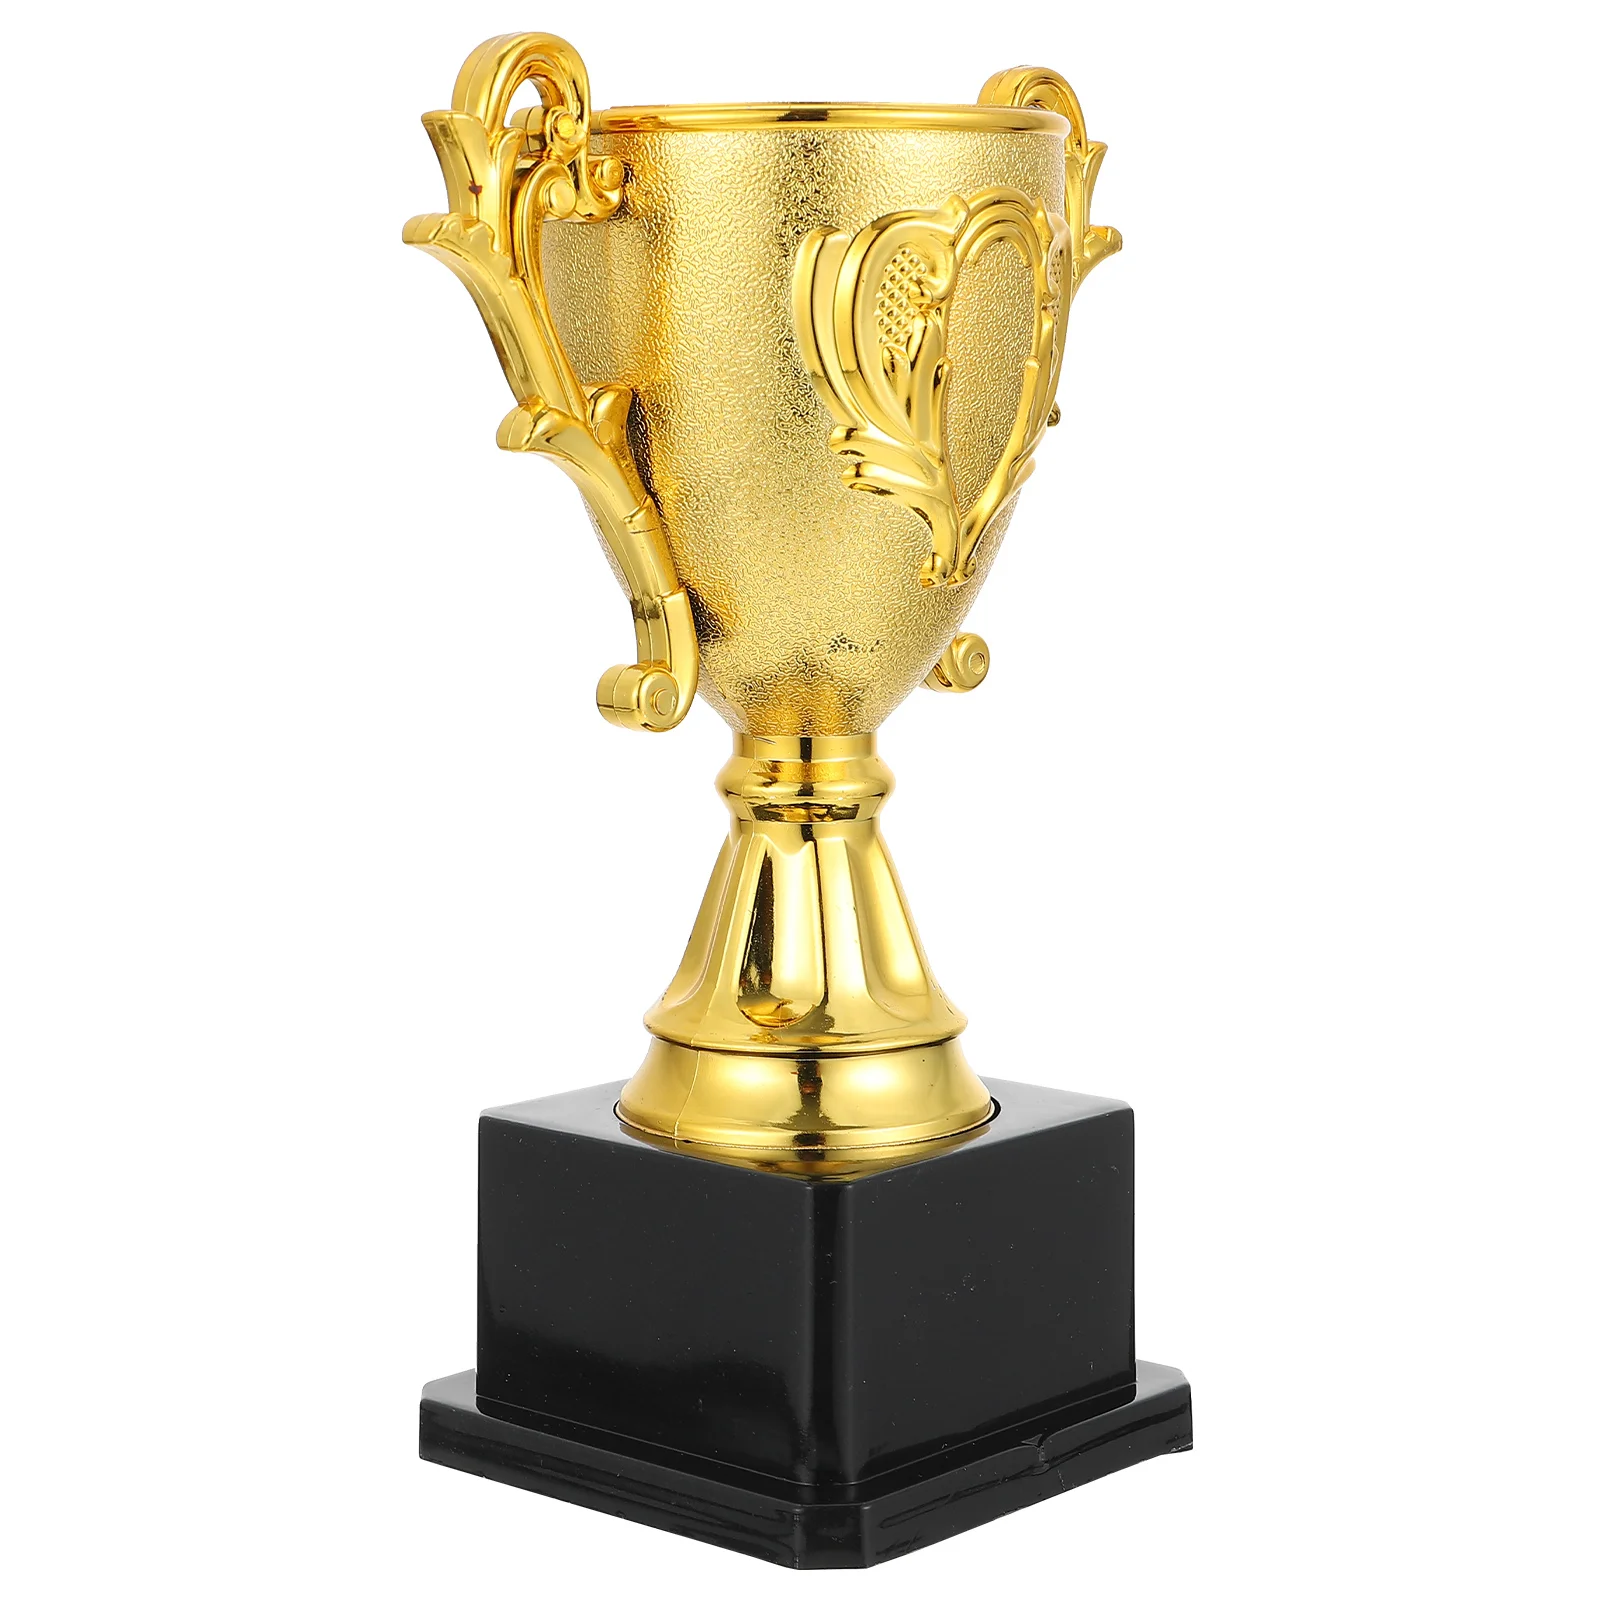 

Золотая награда-трофей для детей, награда-победитель, соревнование фанатов, награда, подарки-победители